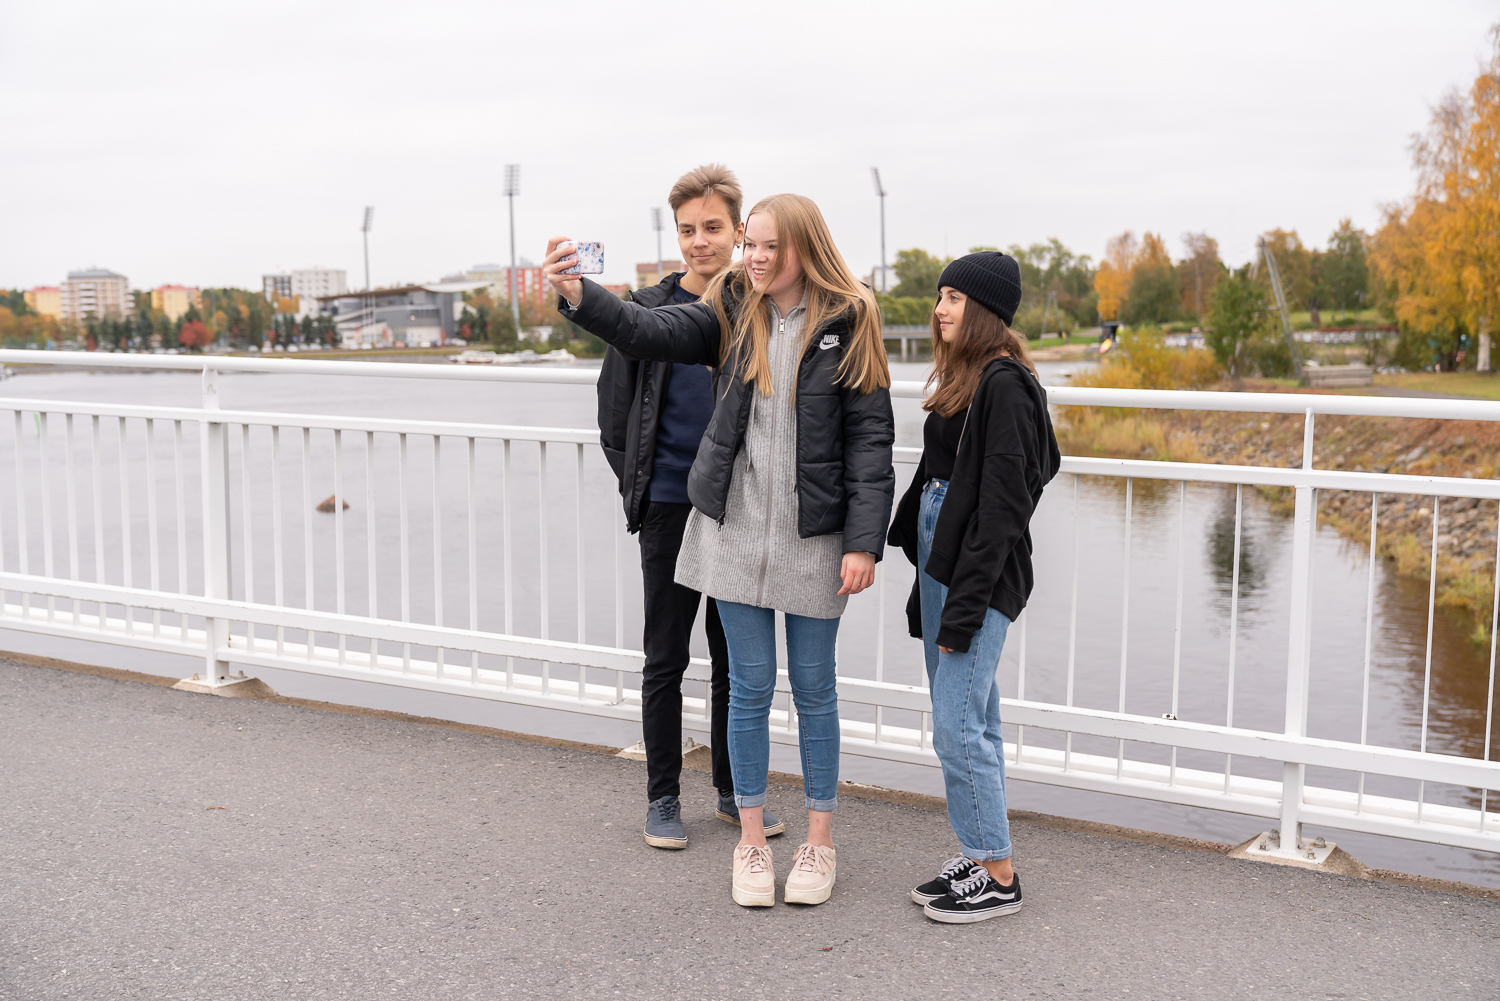 Kolme nuorta sillalla ottamassa yhteiskuvaa.